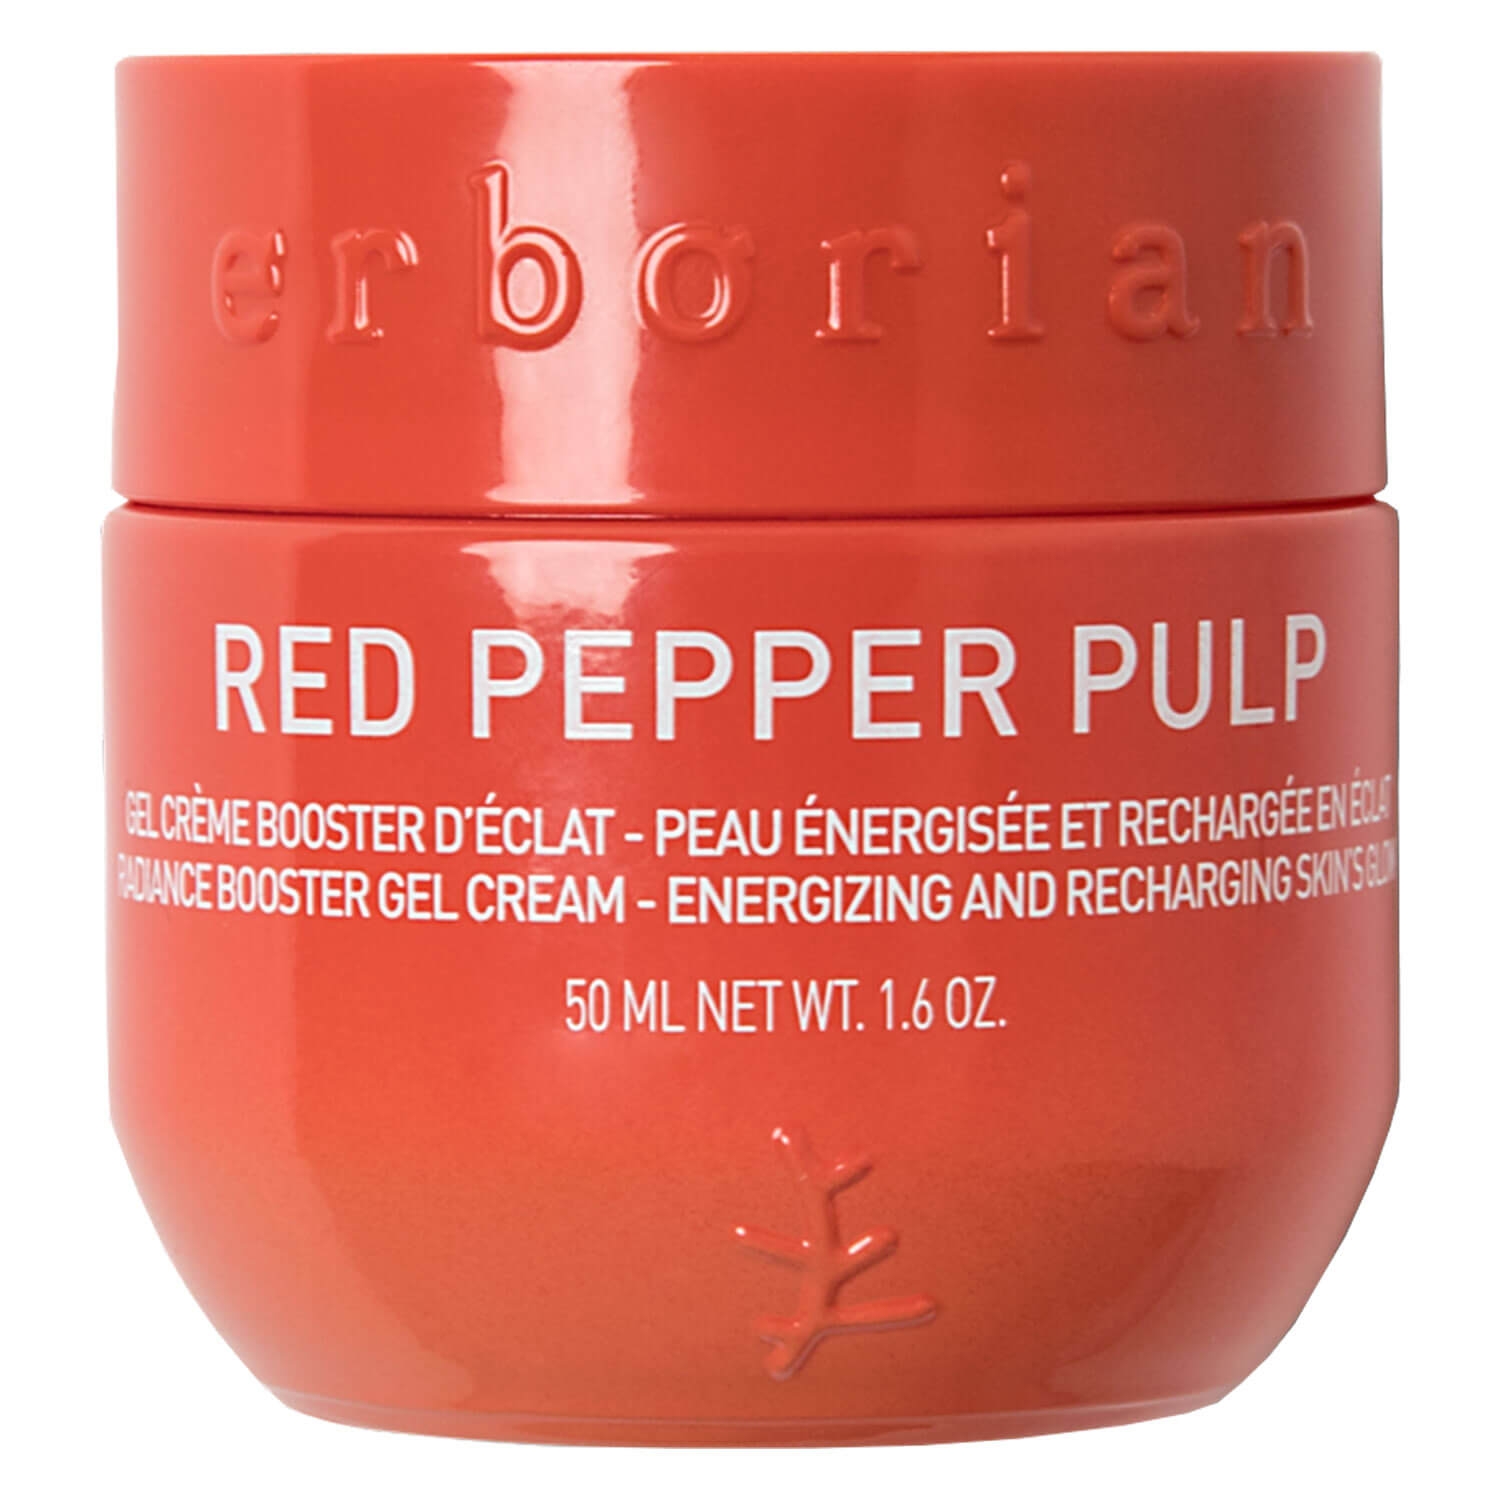 Produktbild von Red Pepper - Pulp